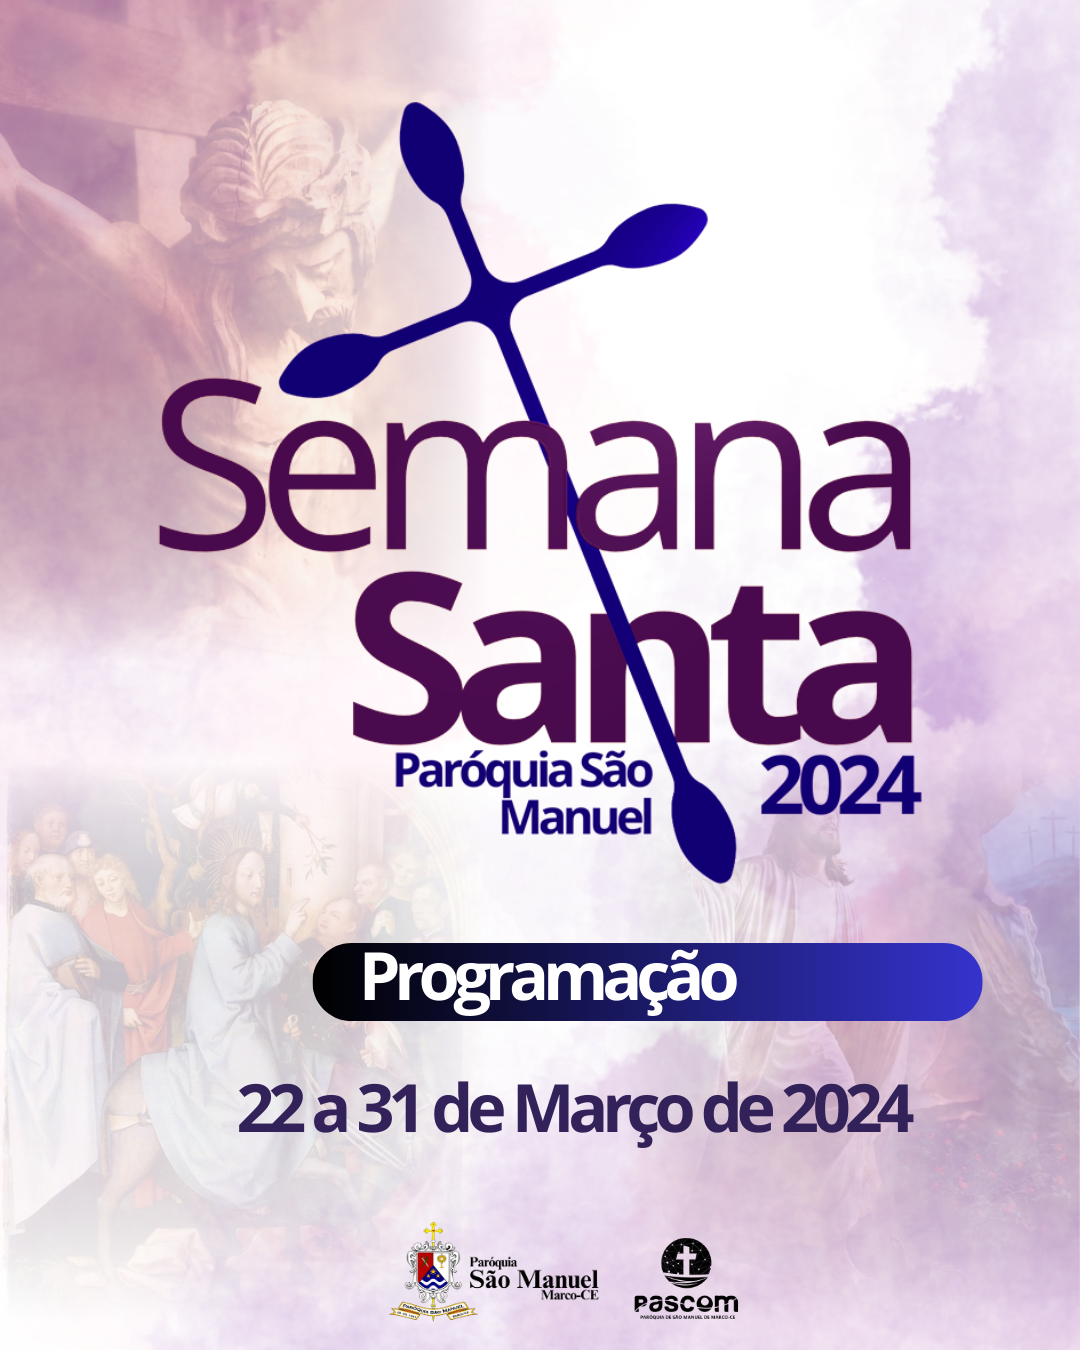 Programação da Semana Santa 2024. Créditos: Paróquia de São Manuel